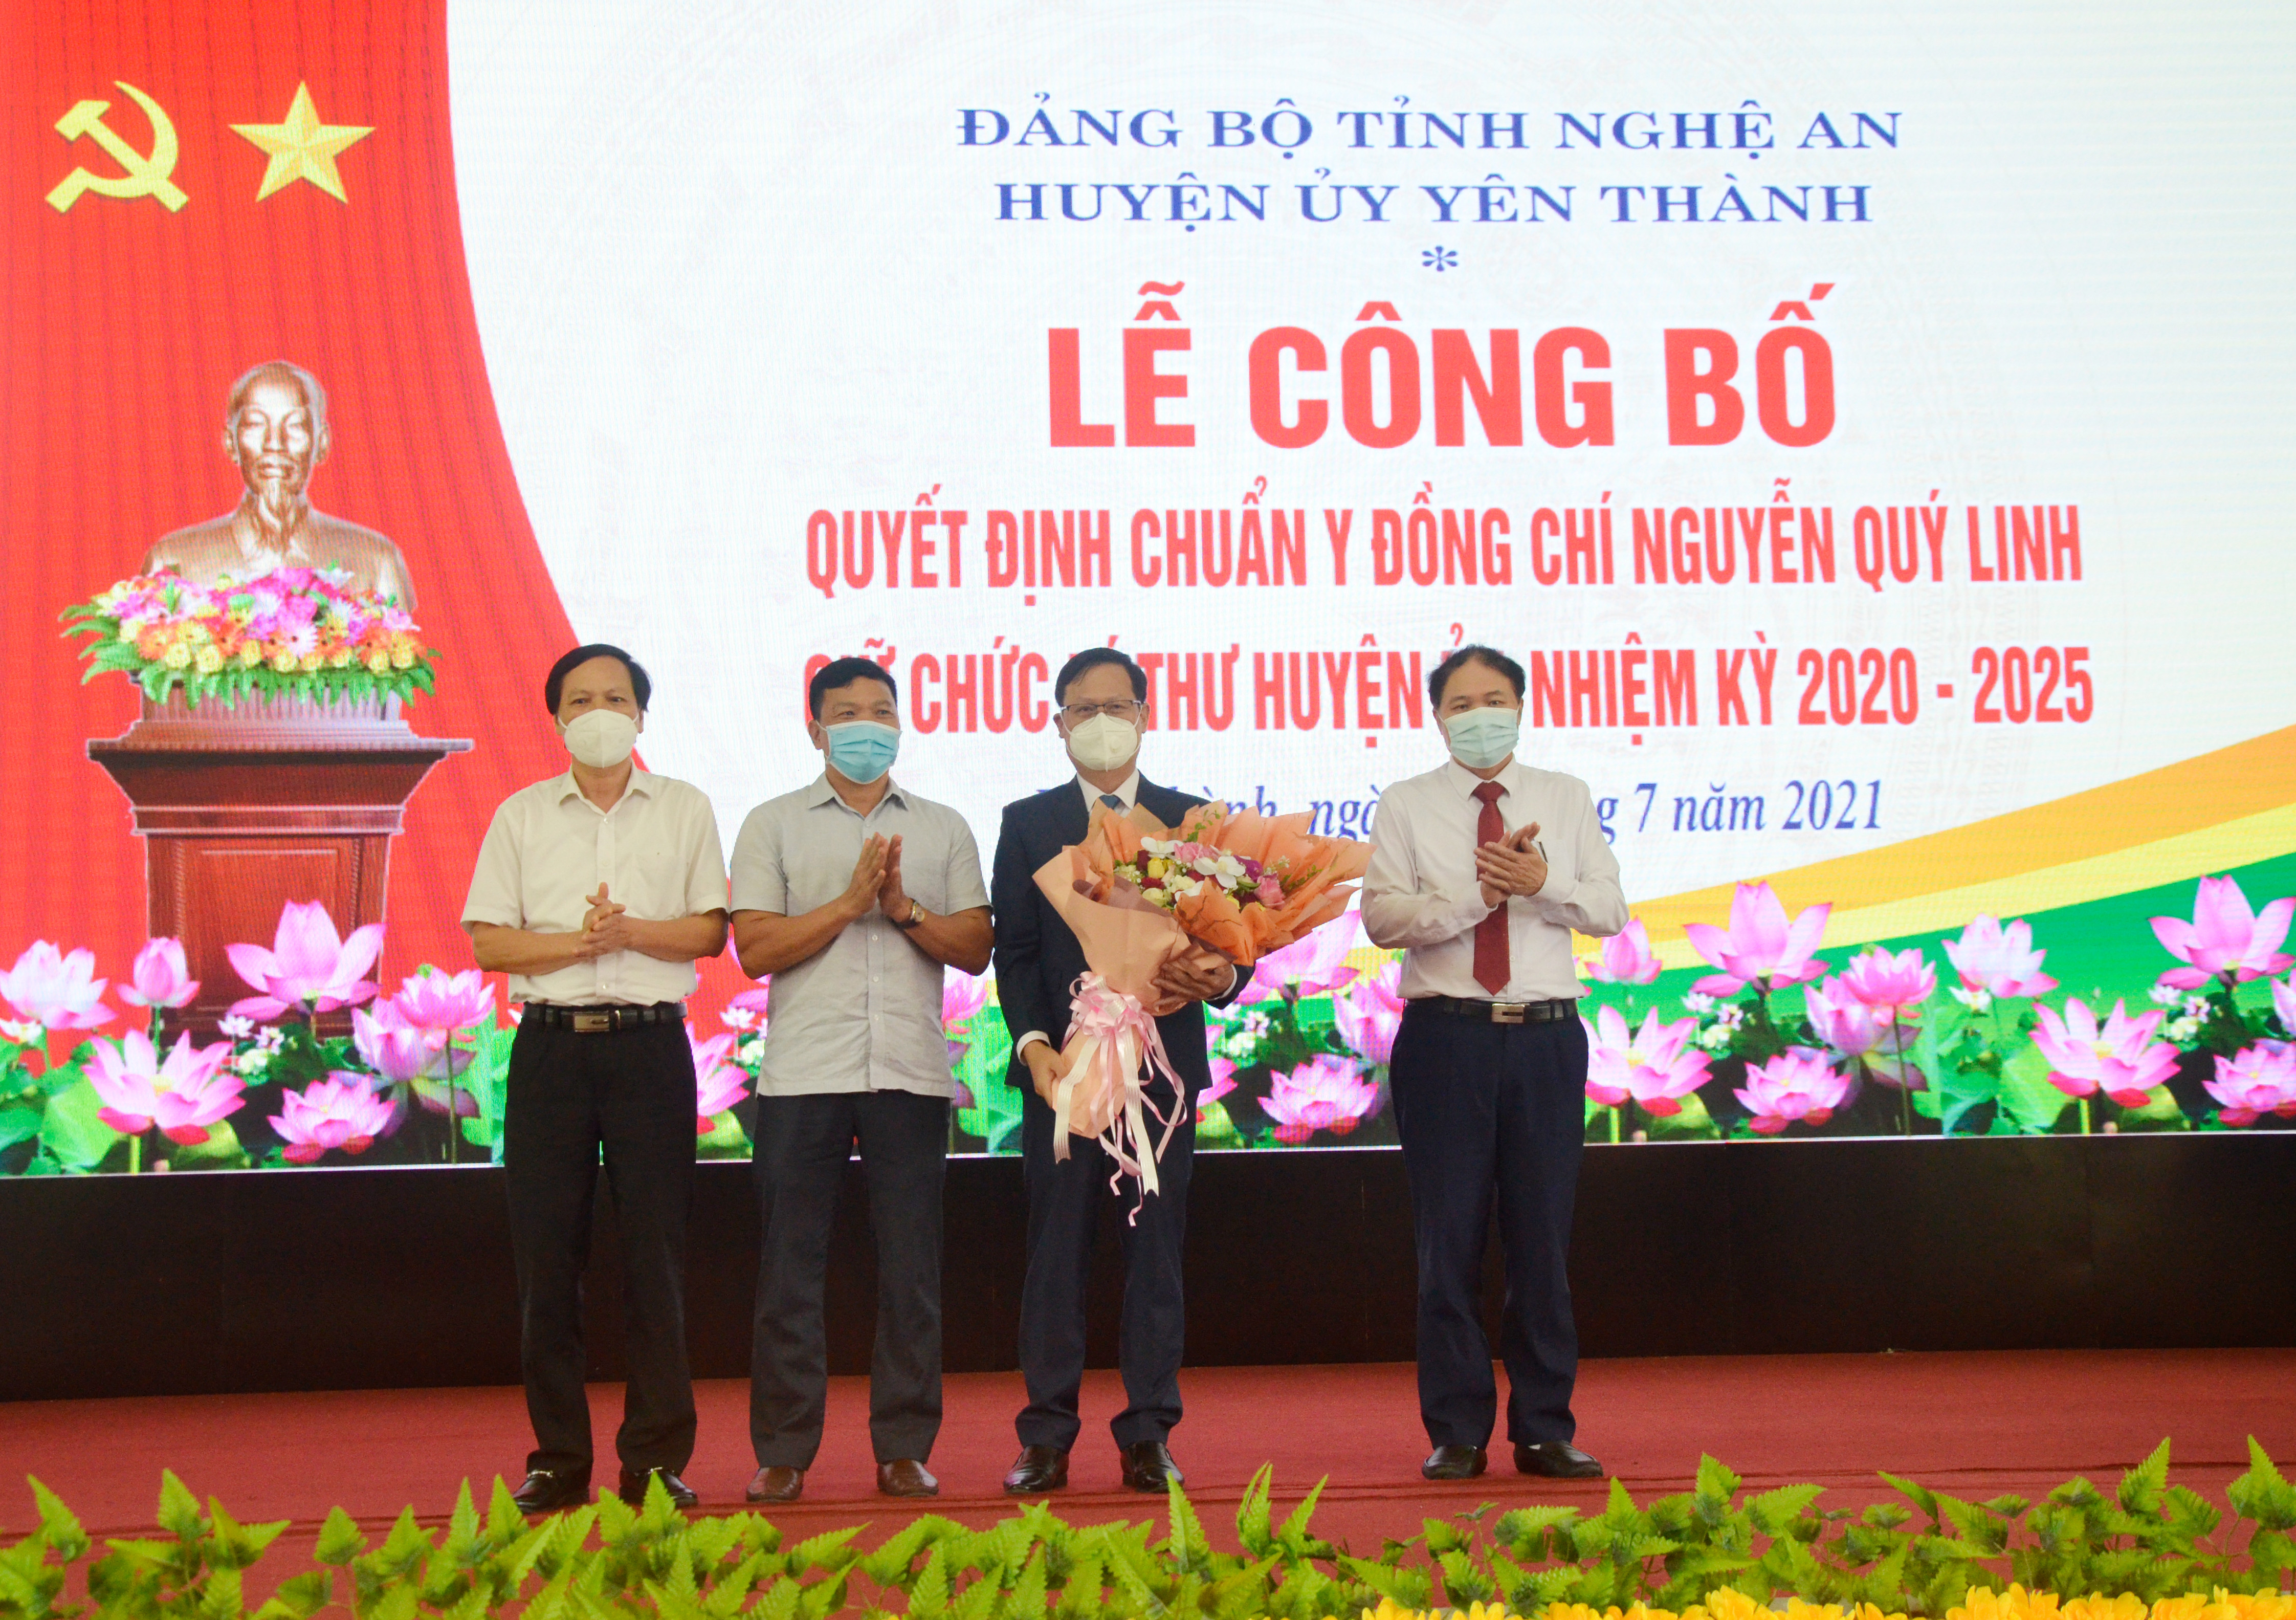 Đại diện các ban Đảng của Tỉnh ủy tặng hoa chúc mừng đồng chí Nguyễn Quý Linh. Ảnh: Thanh Lê